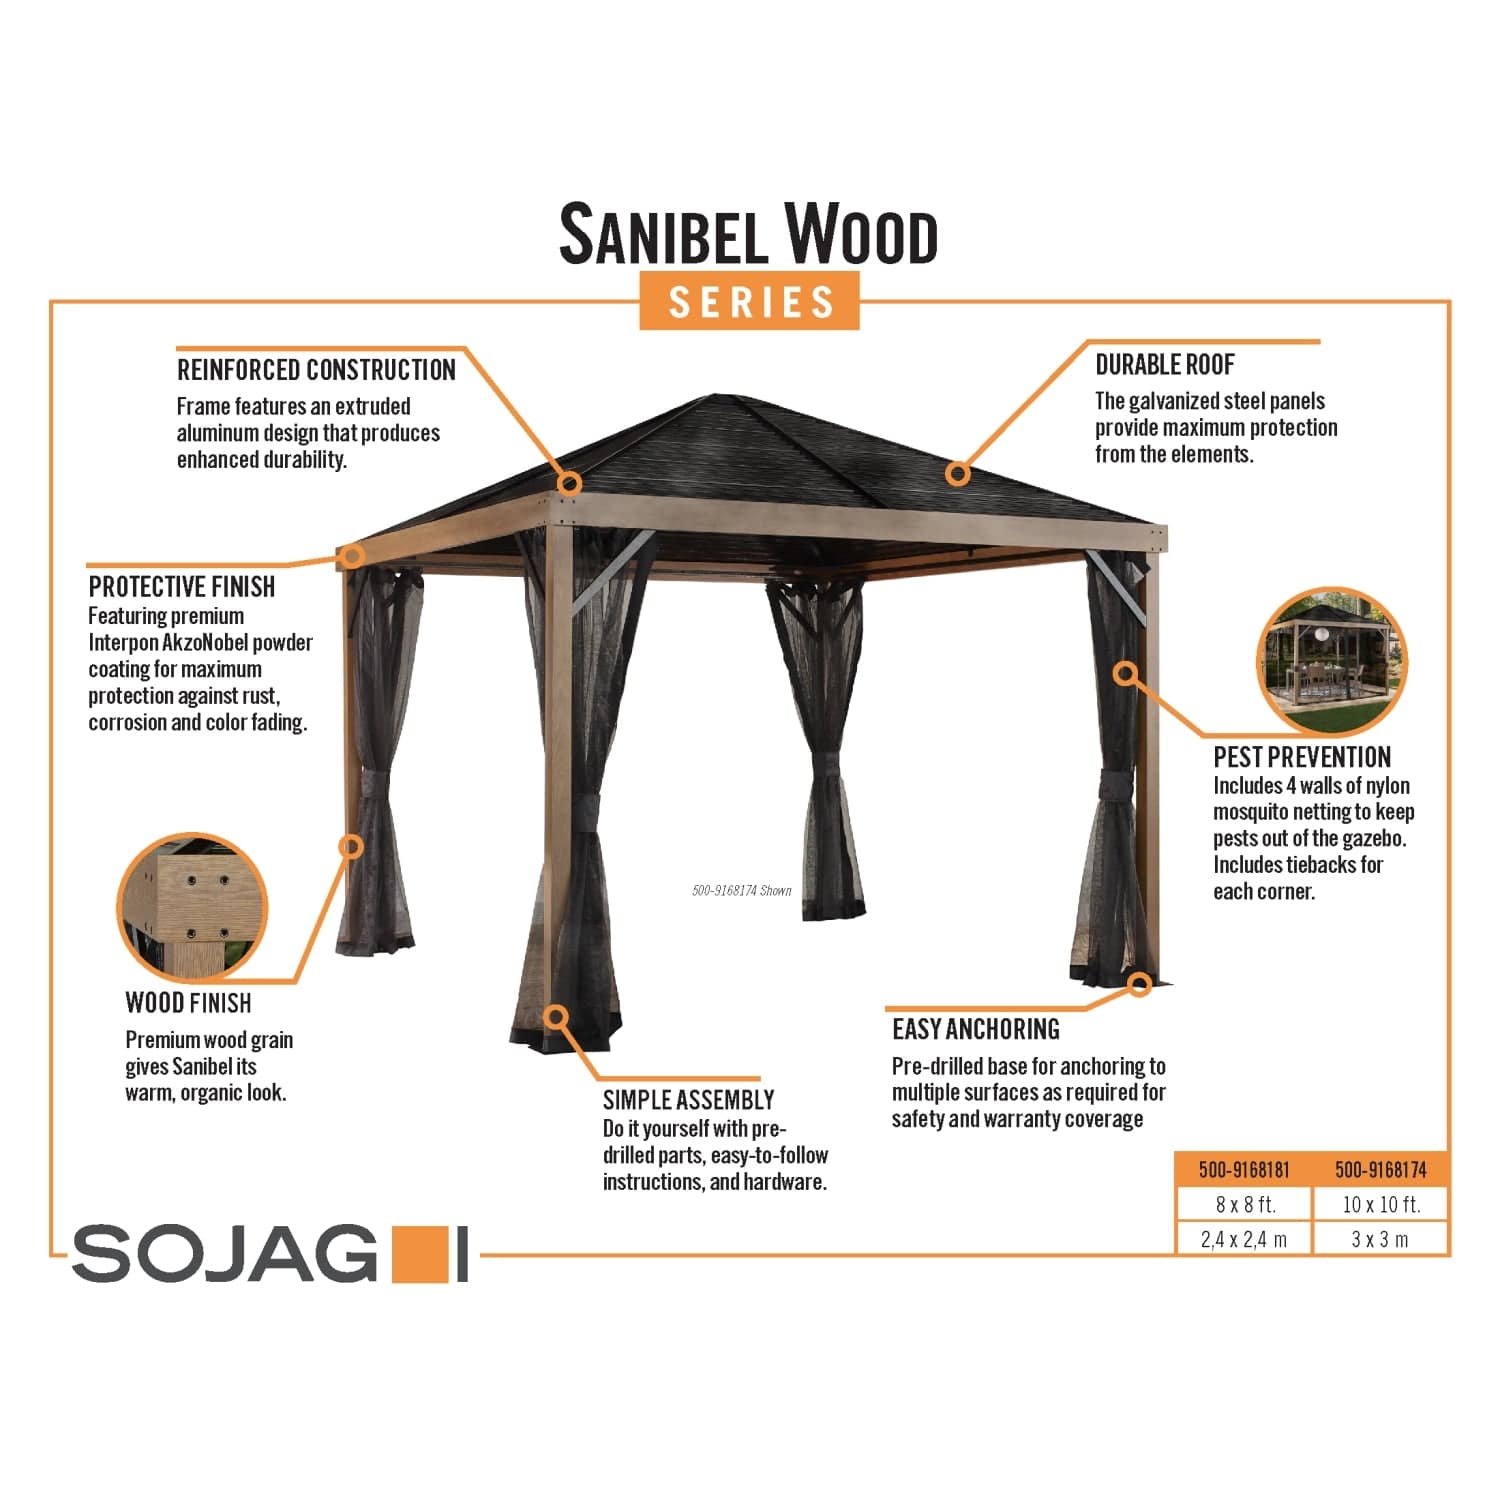 SOJAG Canopies & Gazebos Sojag | Sanibel 10 ft. x 10 ft. Gazebo, Brown 500-9168174